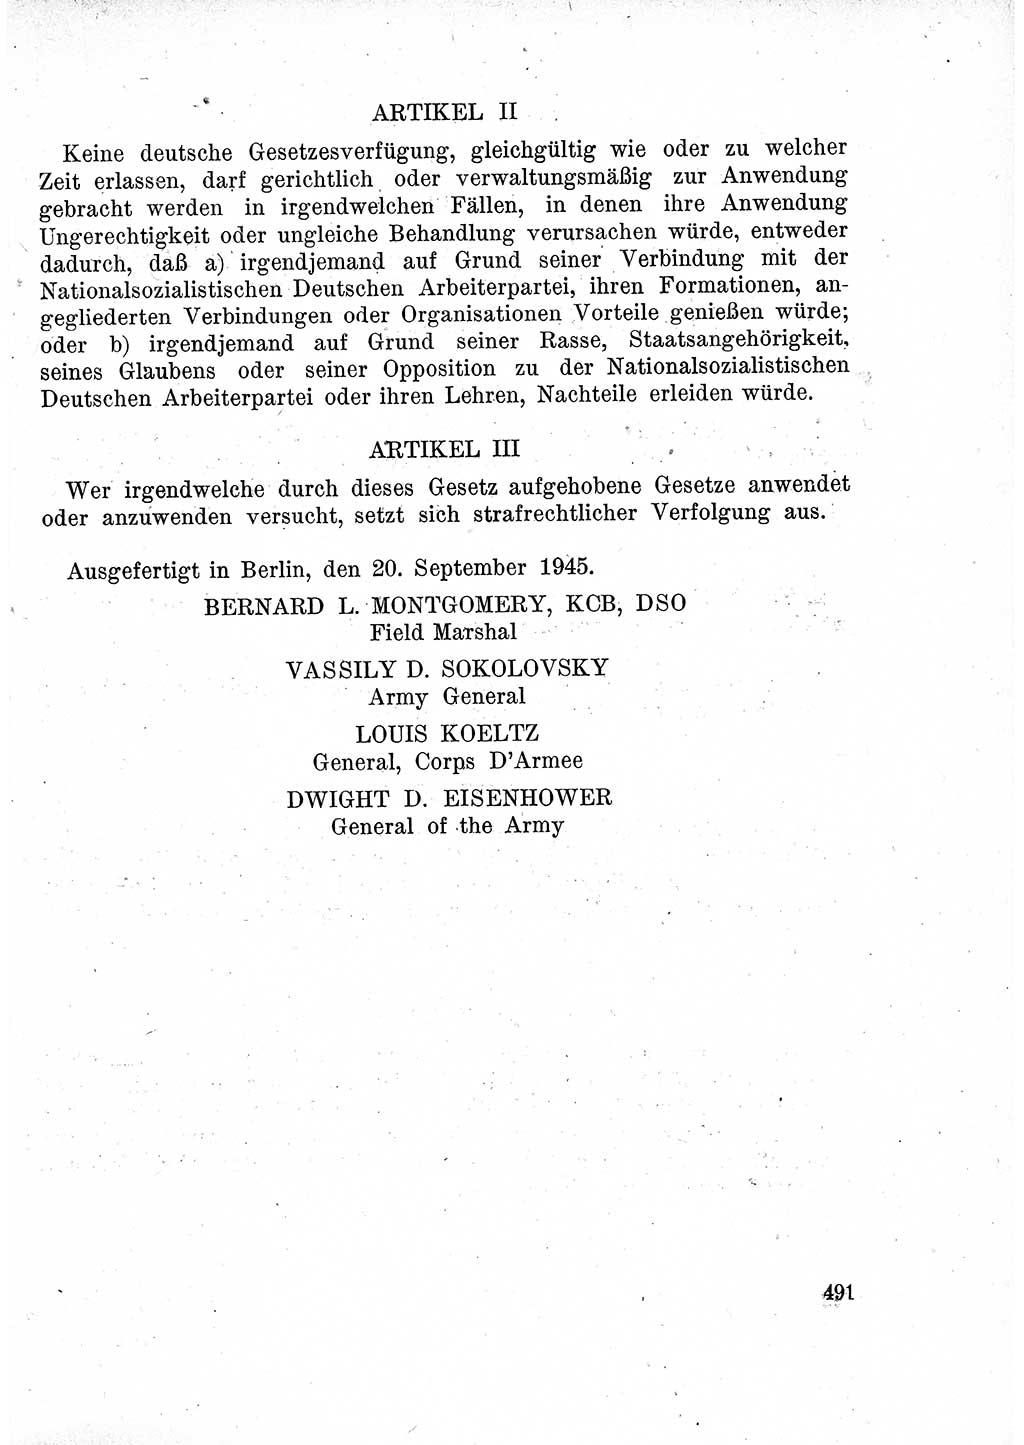 Das Recht der Besatzungsmacht (Deutschland), Proklamationen, Deklerationen, Verordnungen, Gesetze und Bekanntmachungen 1947, Seite 491 (R. Bes. Dtl. 1947, S. 491)